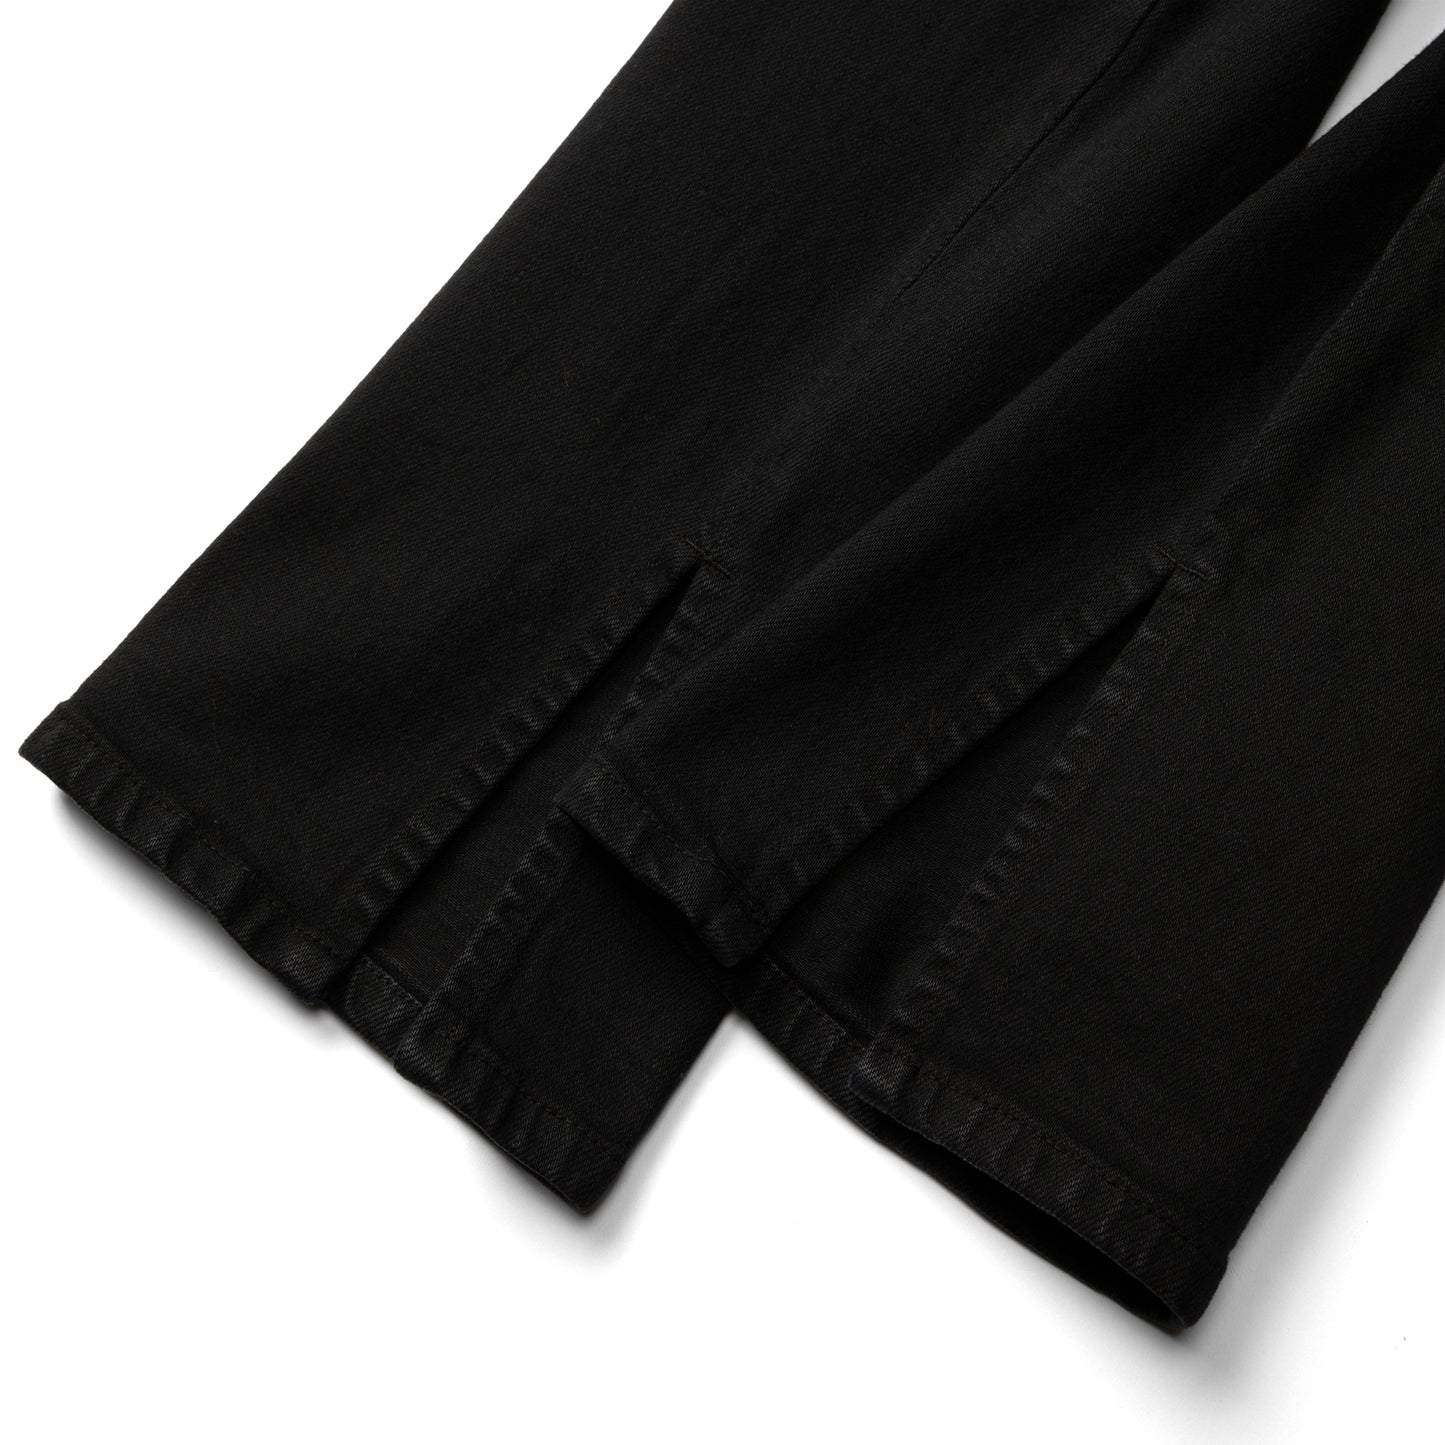 ALYX Spliced 6 Pocket Jean (Black)